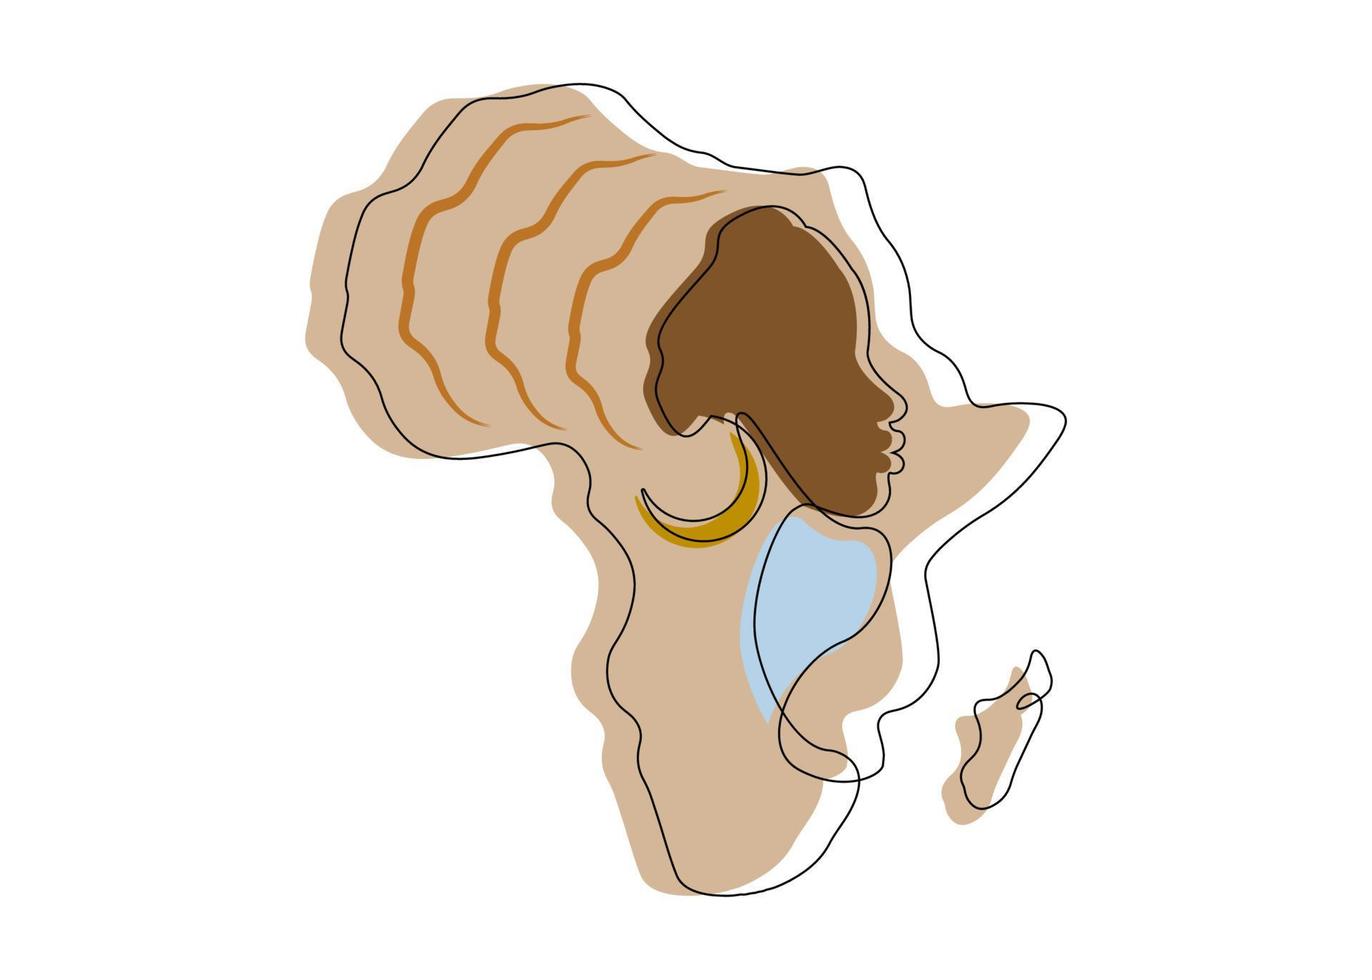 femme africaine noire dans le style d'art en ligne, dessin au trait continu de la femme afro et de la carte du continent africain. Logo d'icône de tatouage de dessin au trait vecteur coloré isolé sur fond blanc